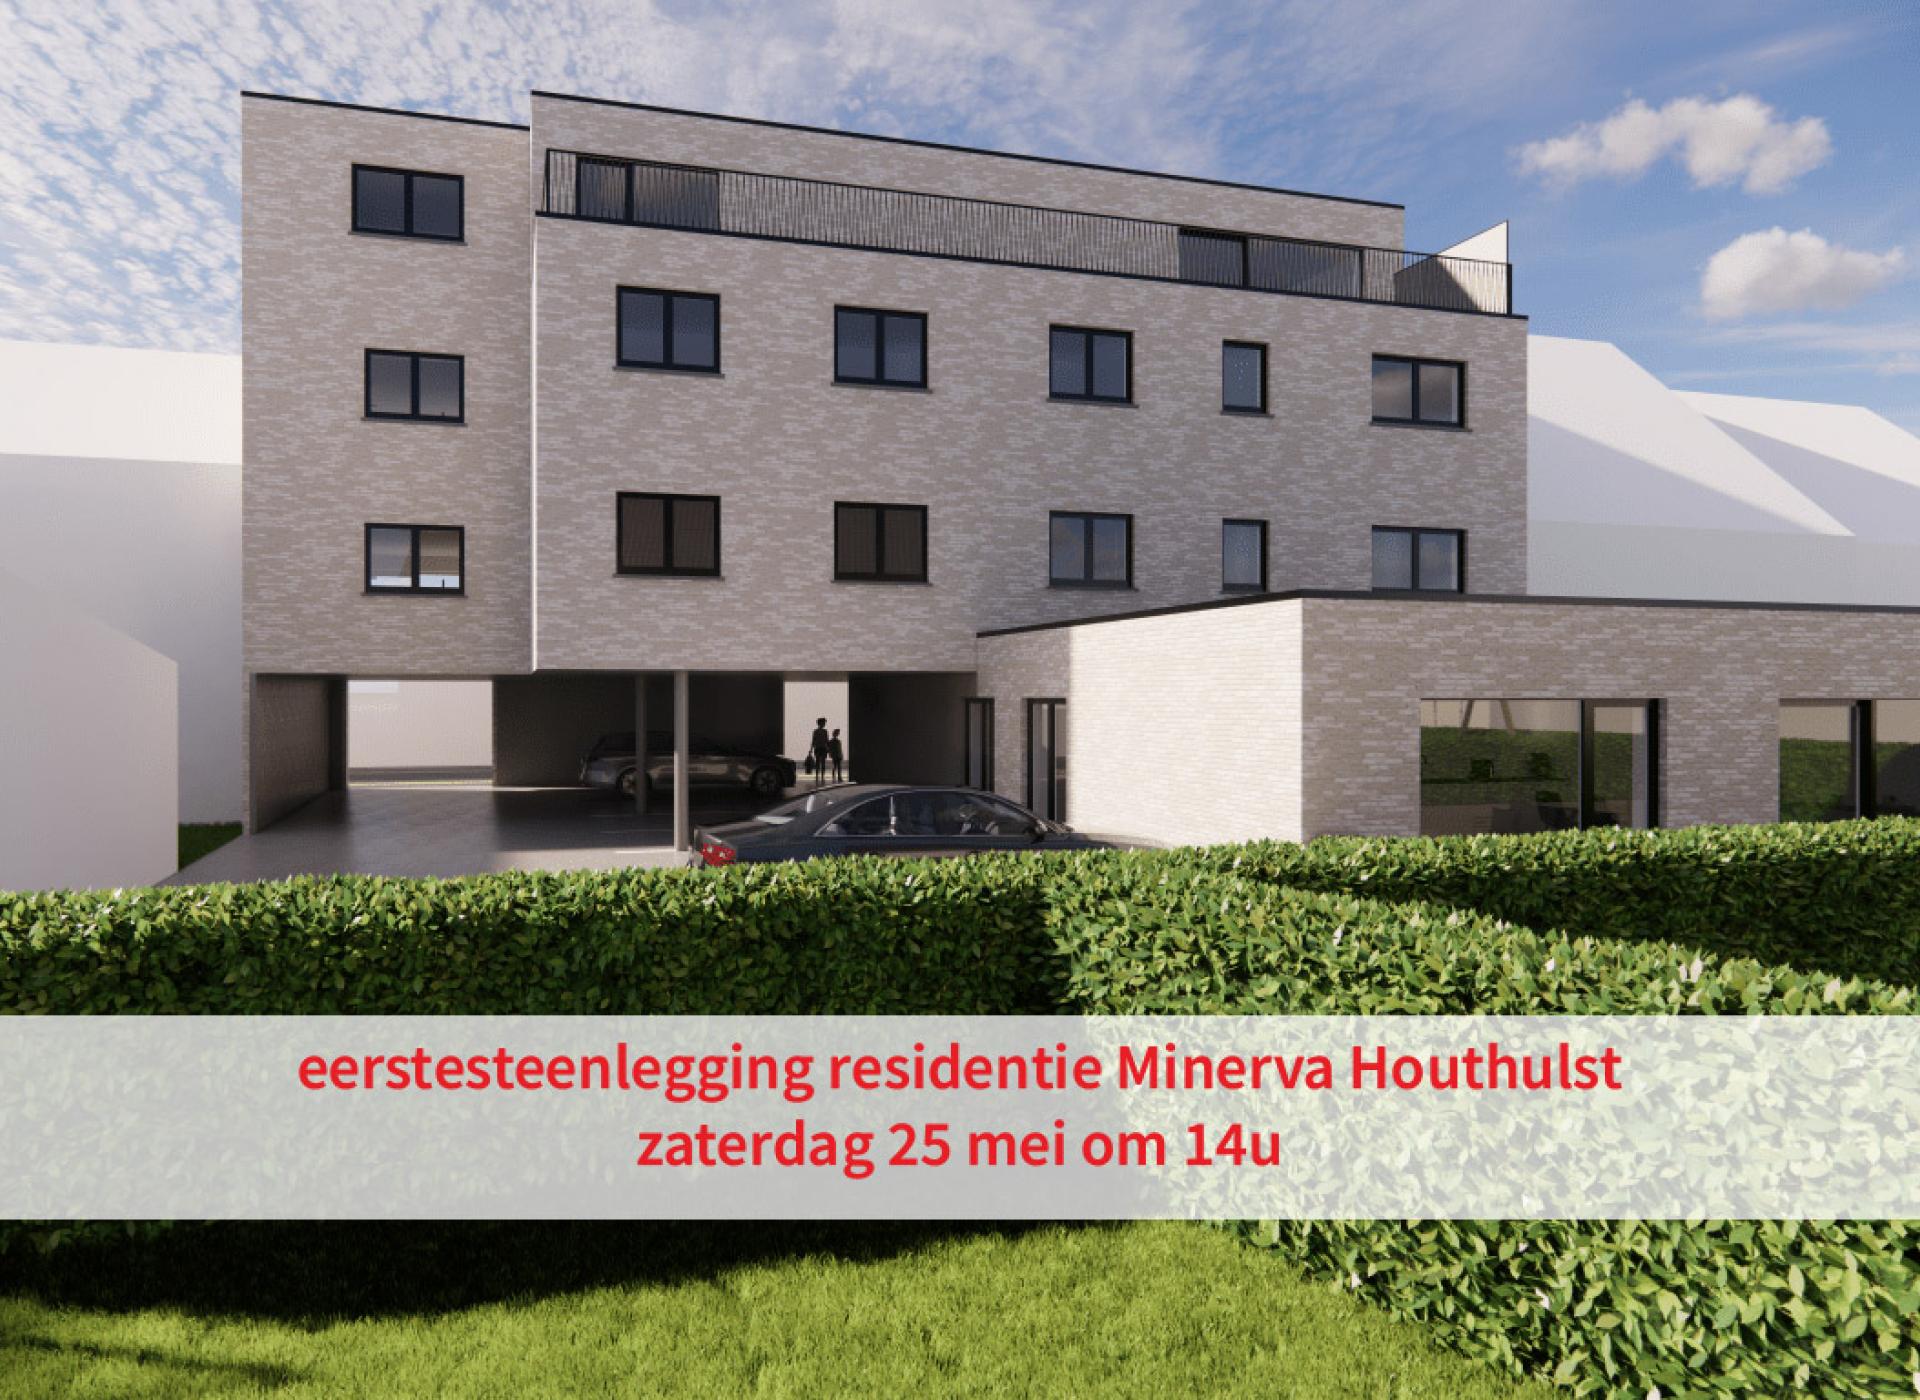 eerstesteenlegging residentie Minerva Houthulst 